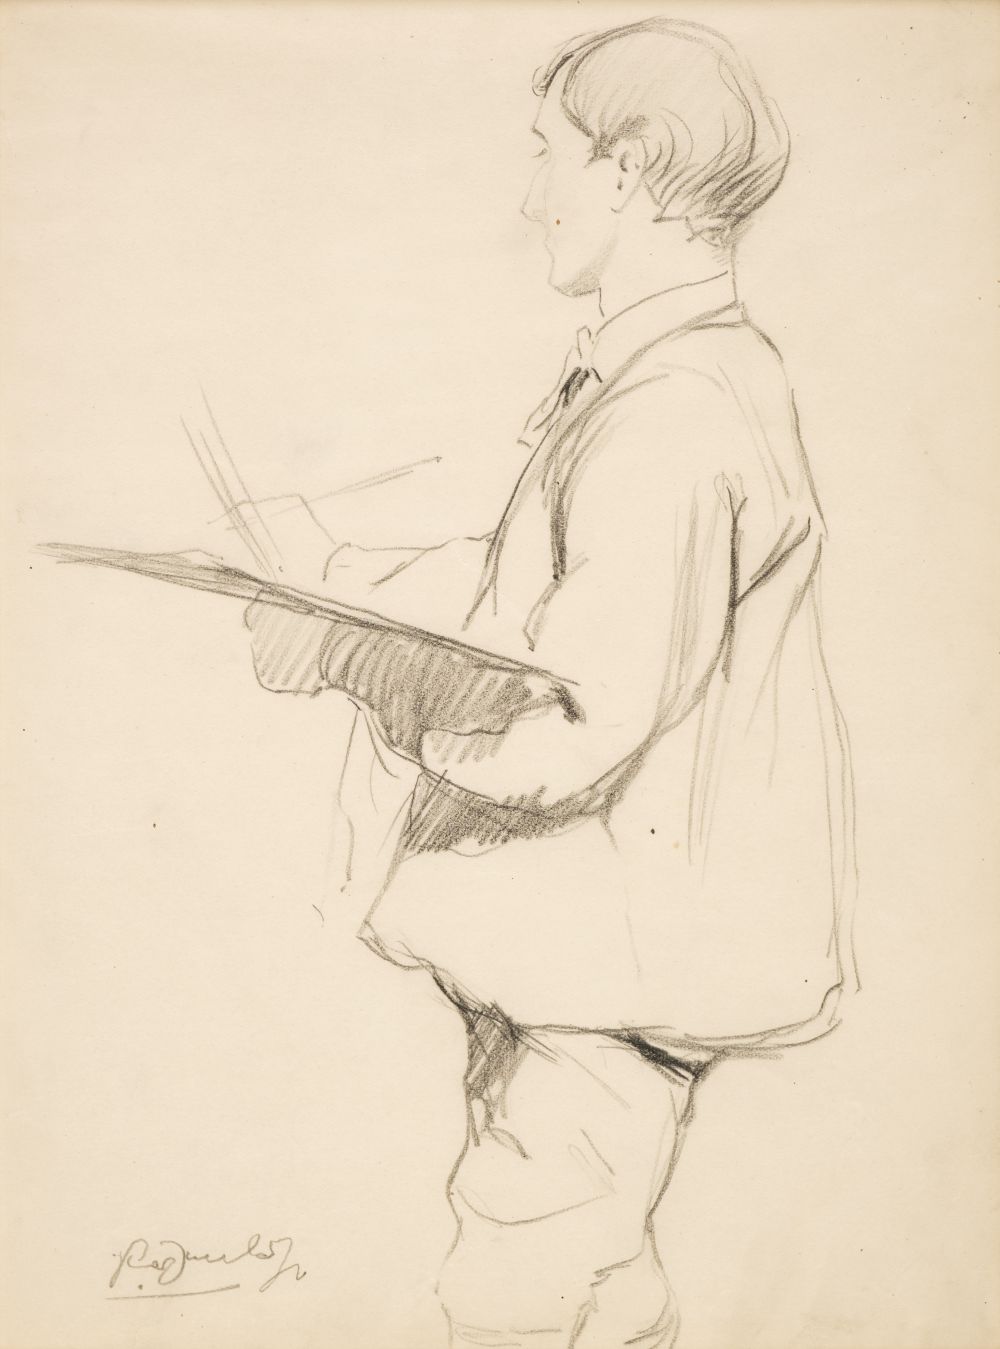 ARR * § Dunlop (Ronald Ossory, 1894-1973). Portrait of an artist at work, pencil